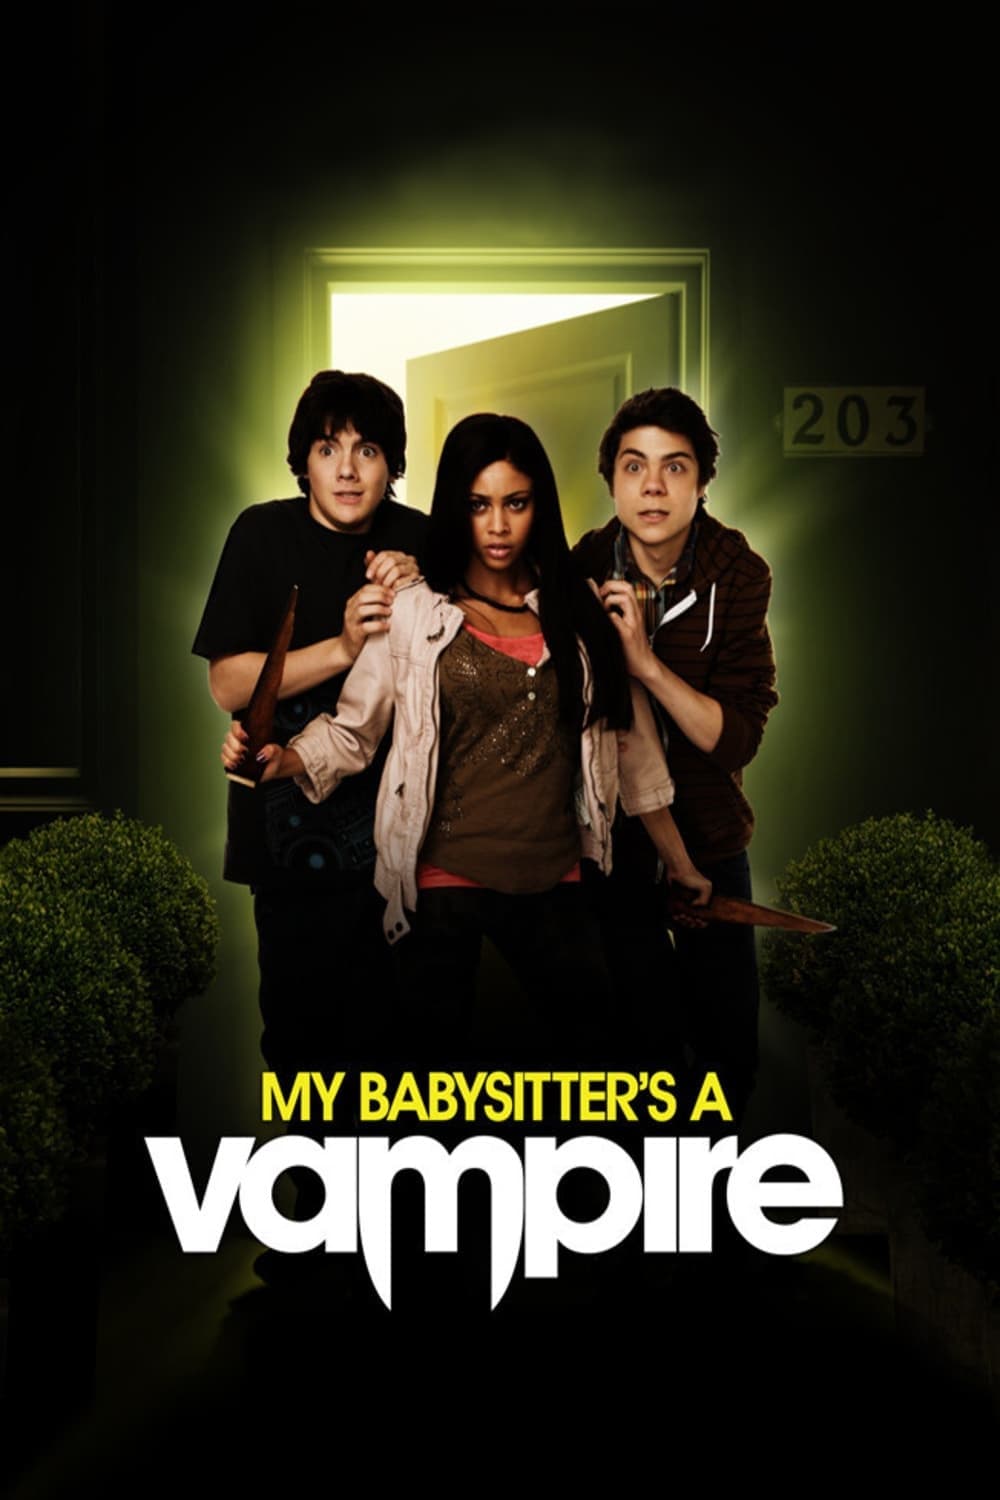 La mia babysitter è un vampiro film